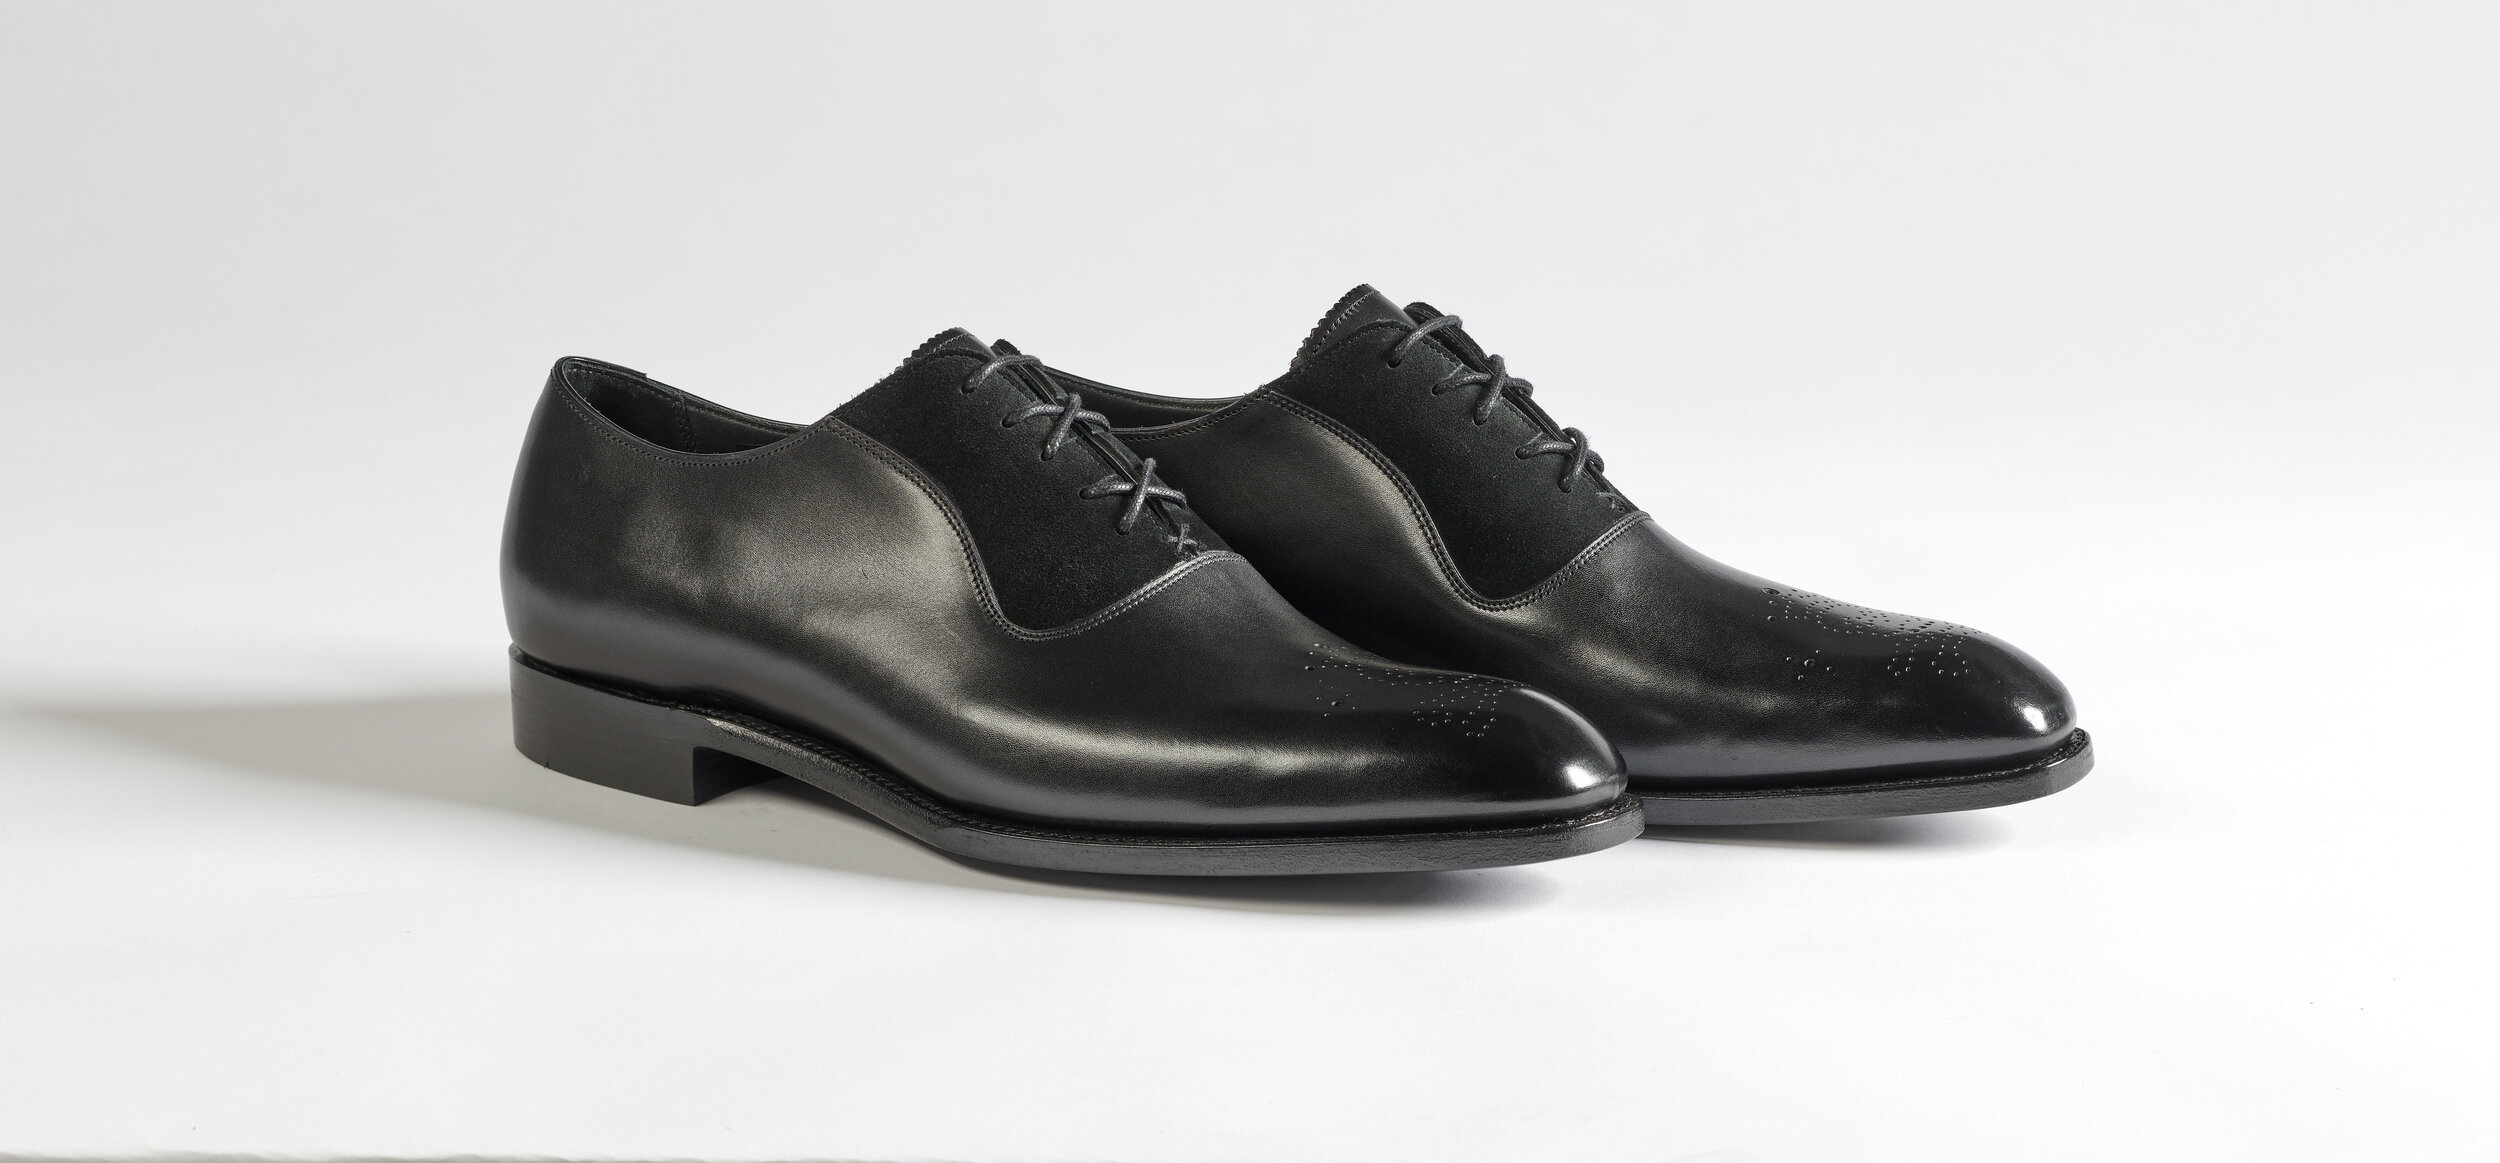 barker black oxford shoes